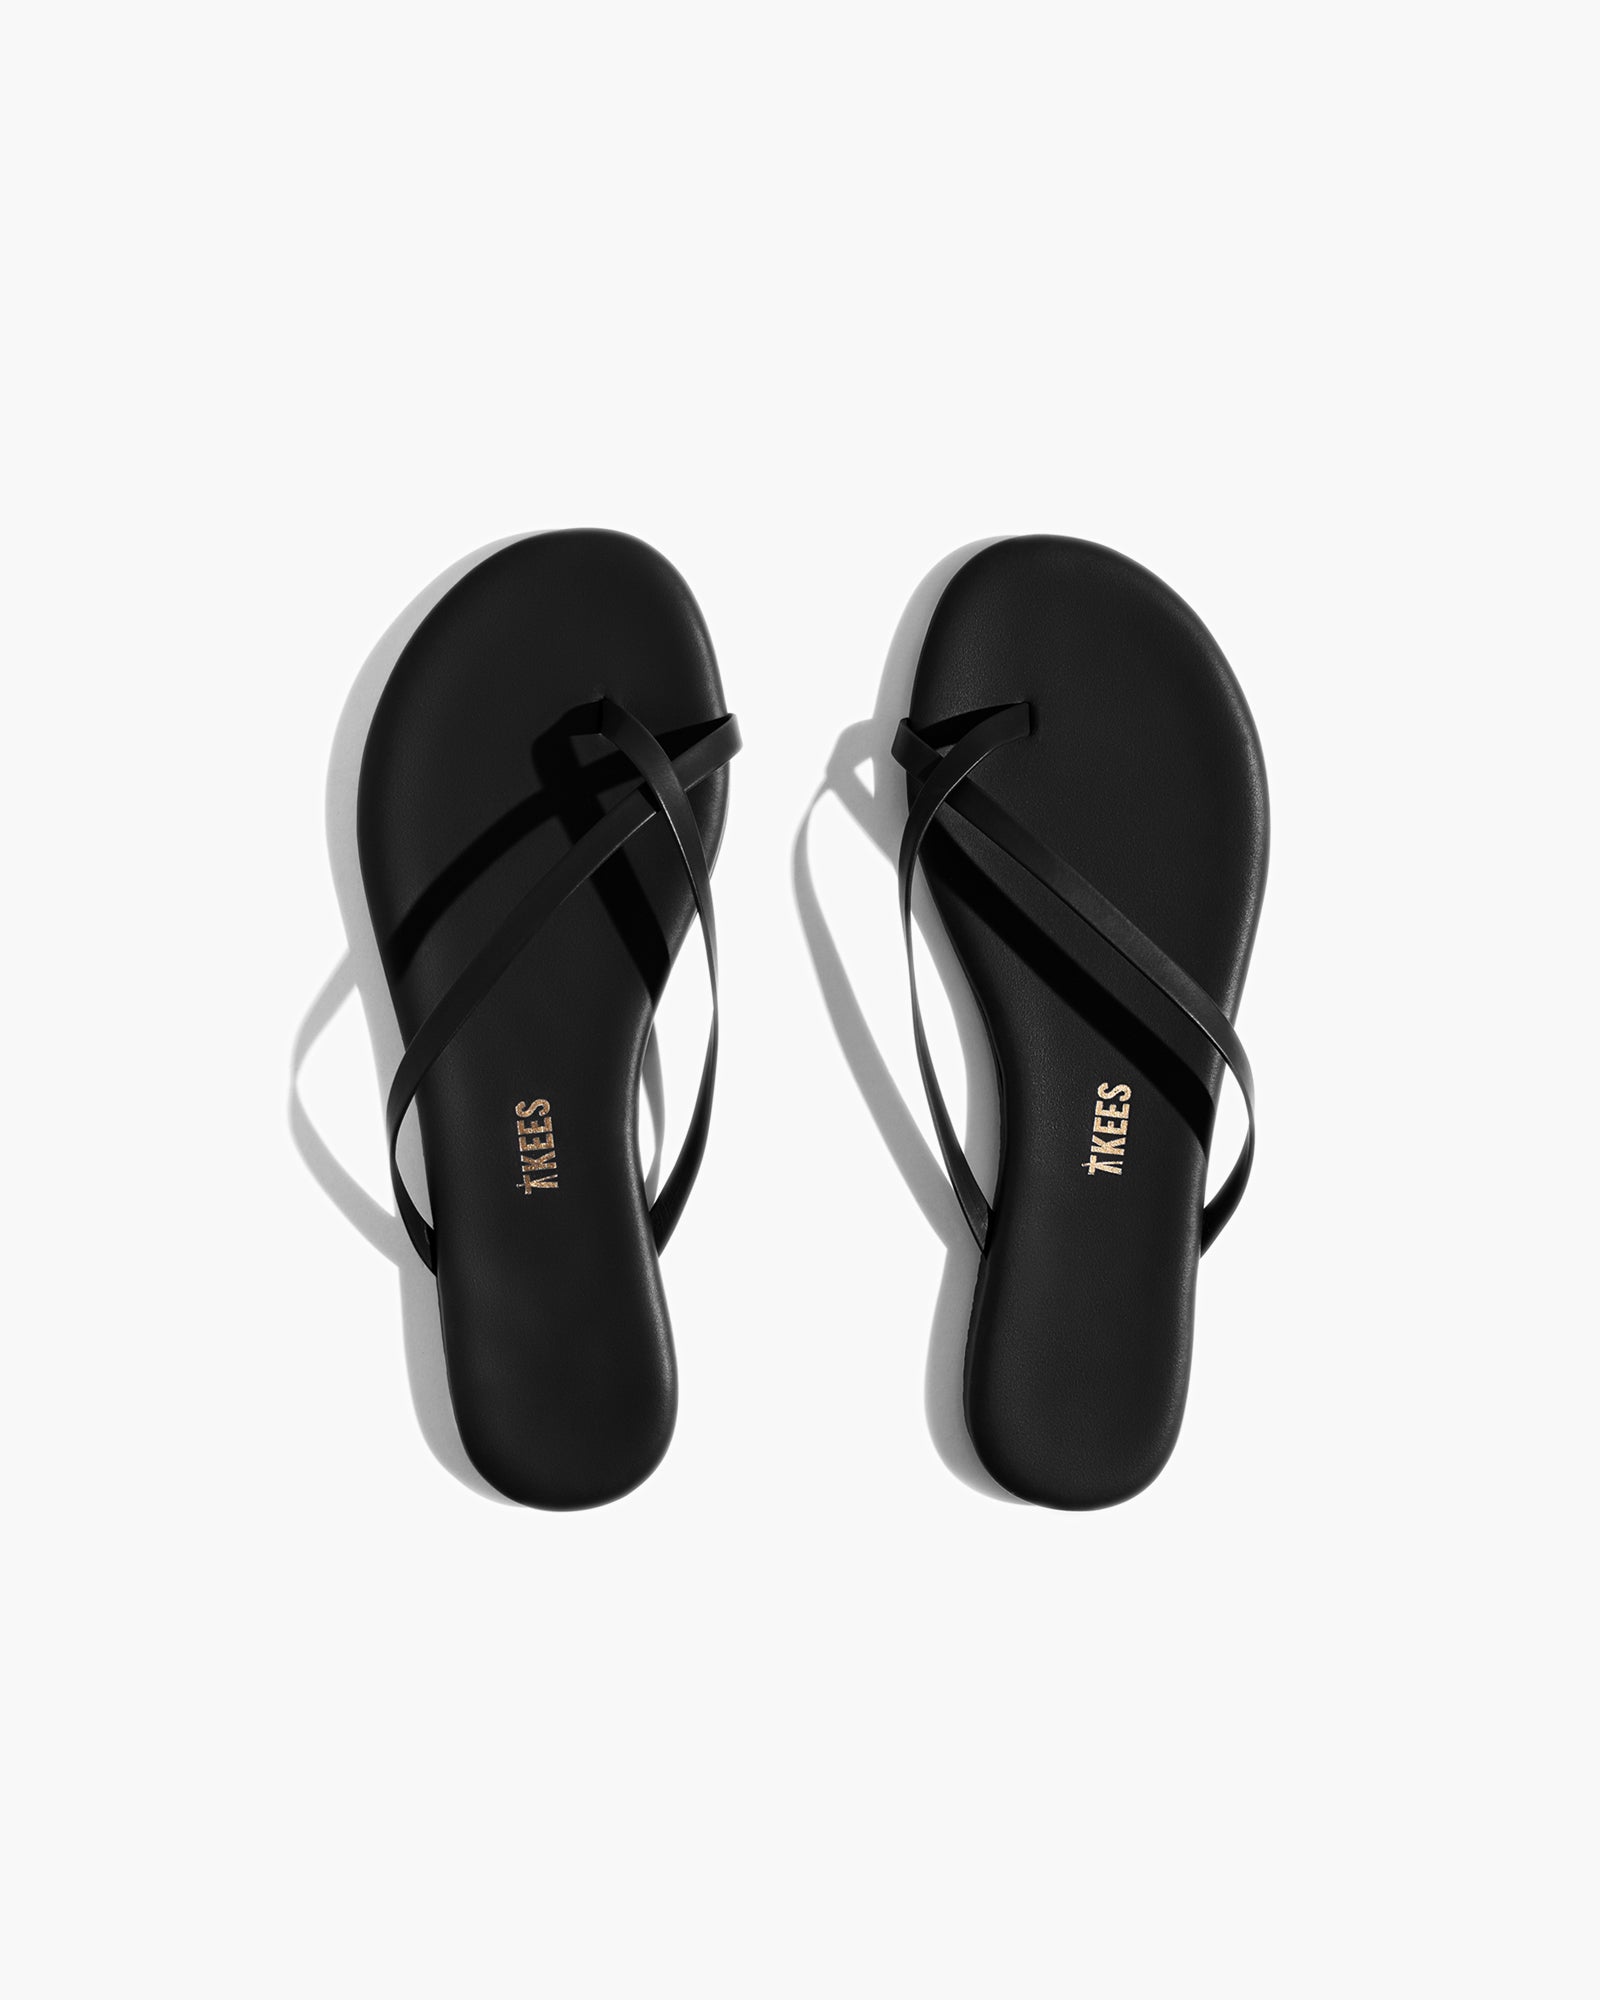 Riley in Sable | Sandals | Women's Footwear – TKEES